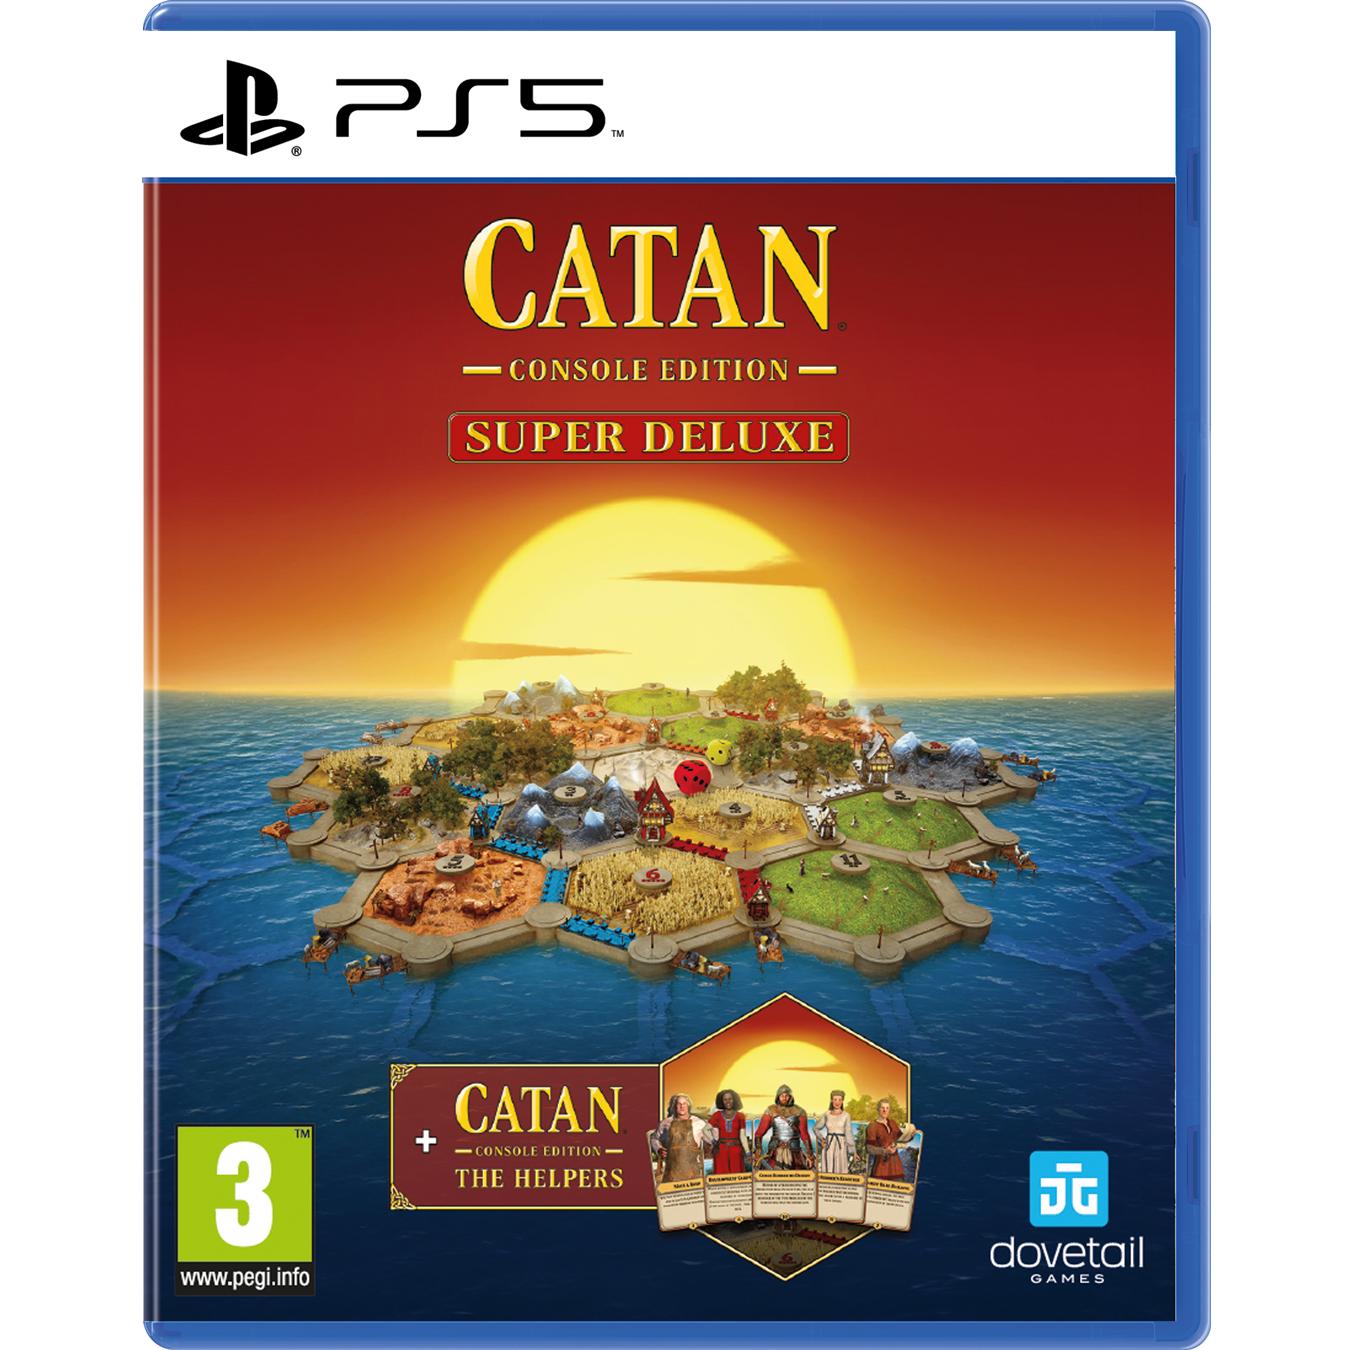 Playstation - CATAN Super Deluxe Edition - PS5 - Nuevo precintado - PAL España